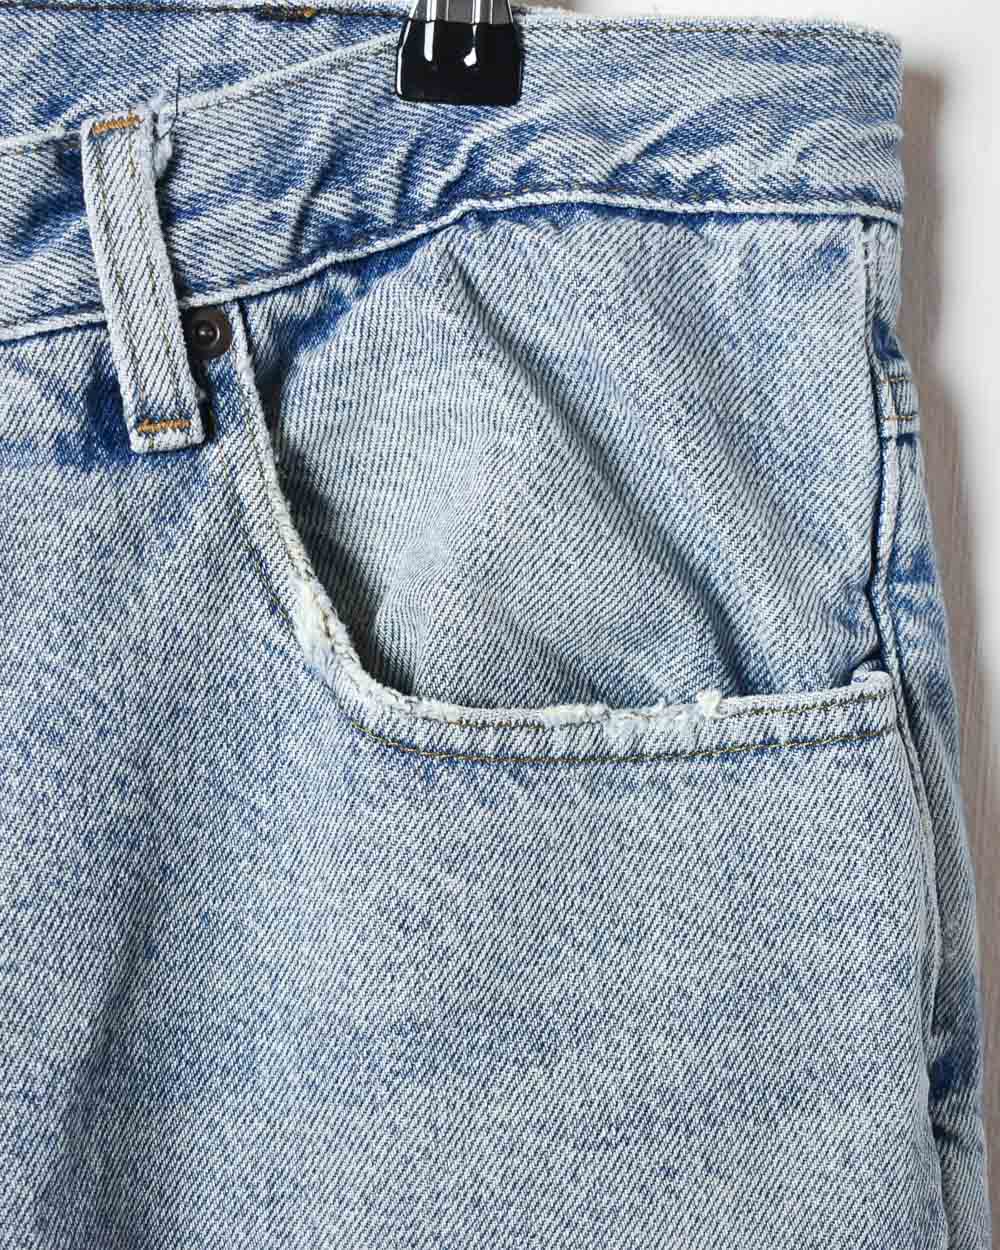 BabyBlue LL Bean Fleece Lined Jeans - W34 L29